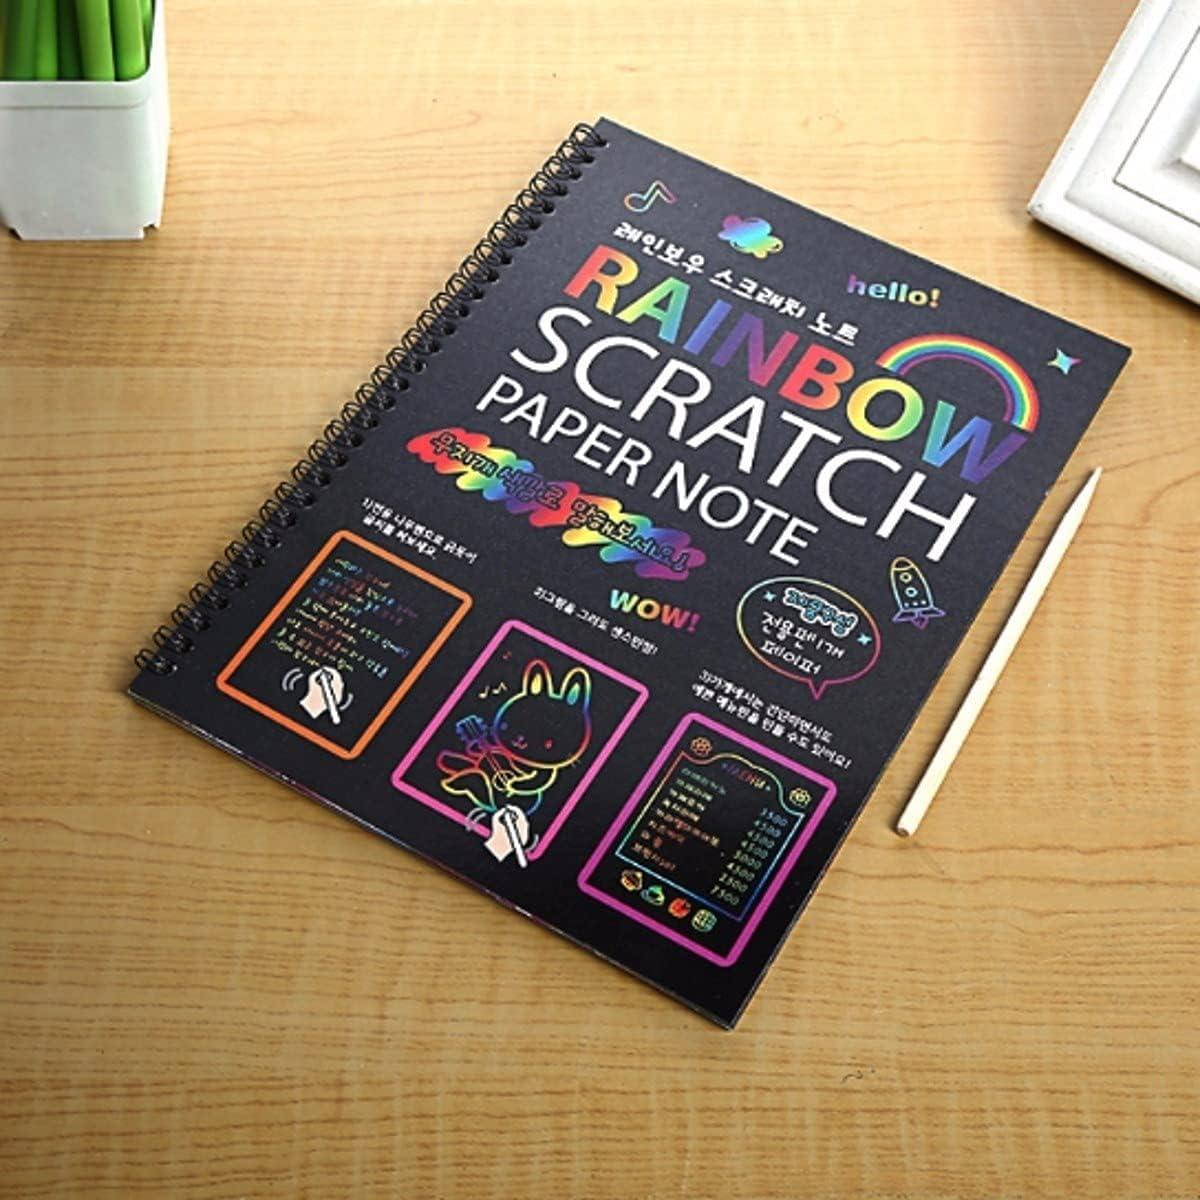  Scratch Art Note Books for Kids, Scratch Art Paper Rainbow  Magic Scratch Art Books for Children, Colored Scratch Art Notebooks with  Wooden Pen Children's Day Best Gifts